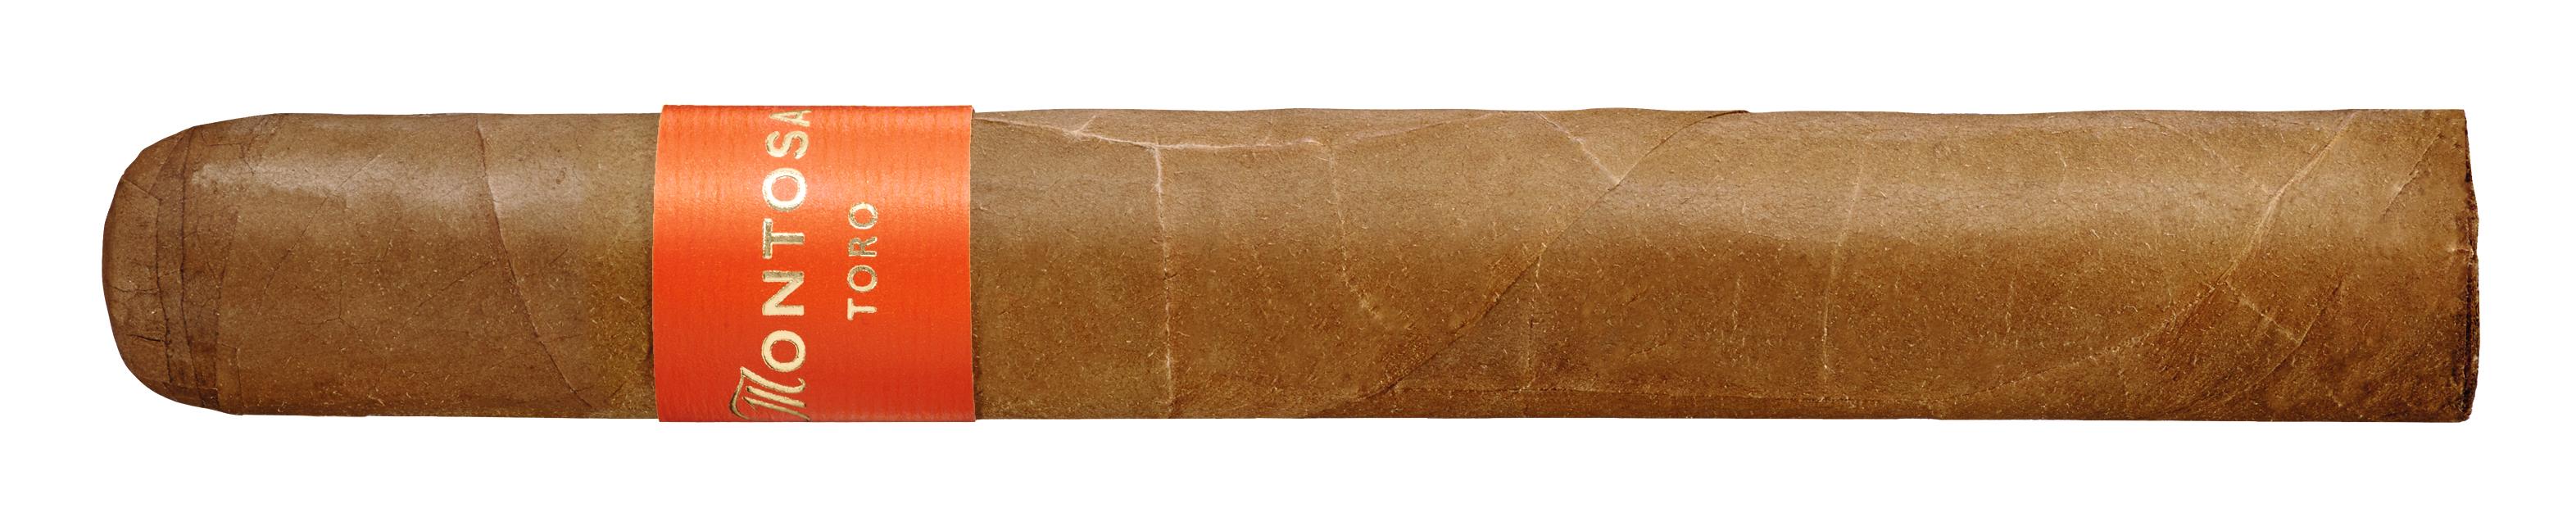 Montosa Zigarren Toro 1 Packung